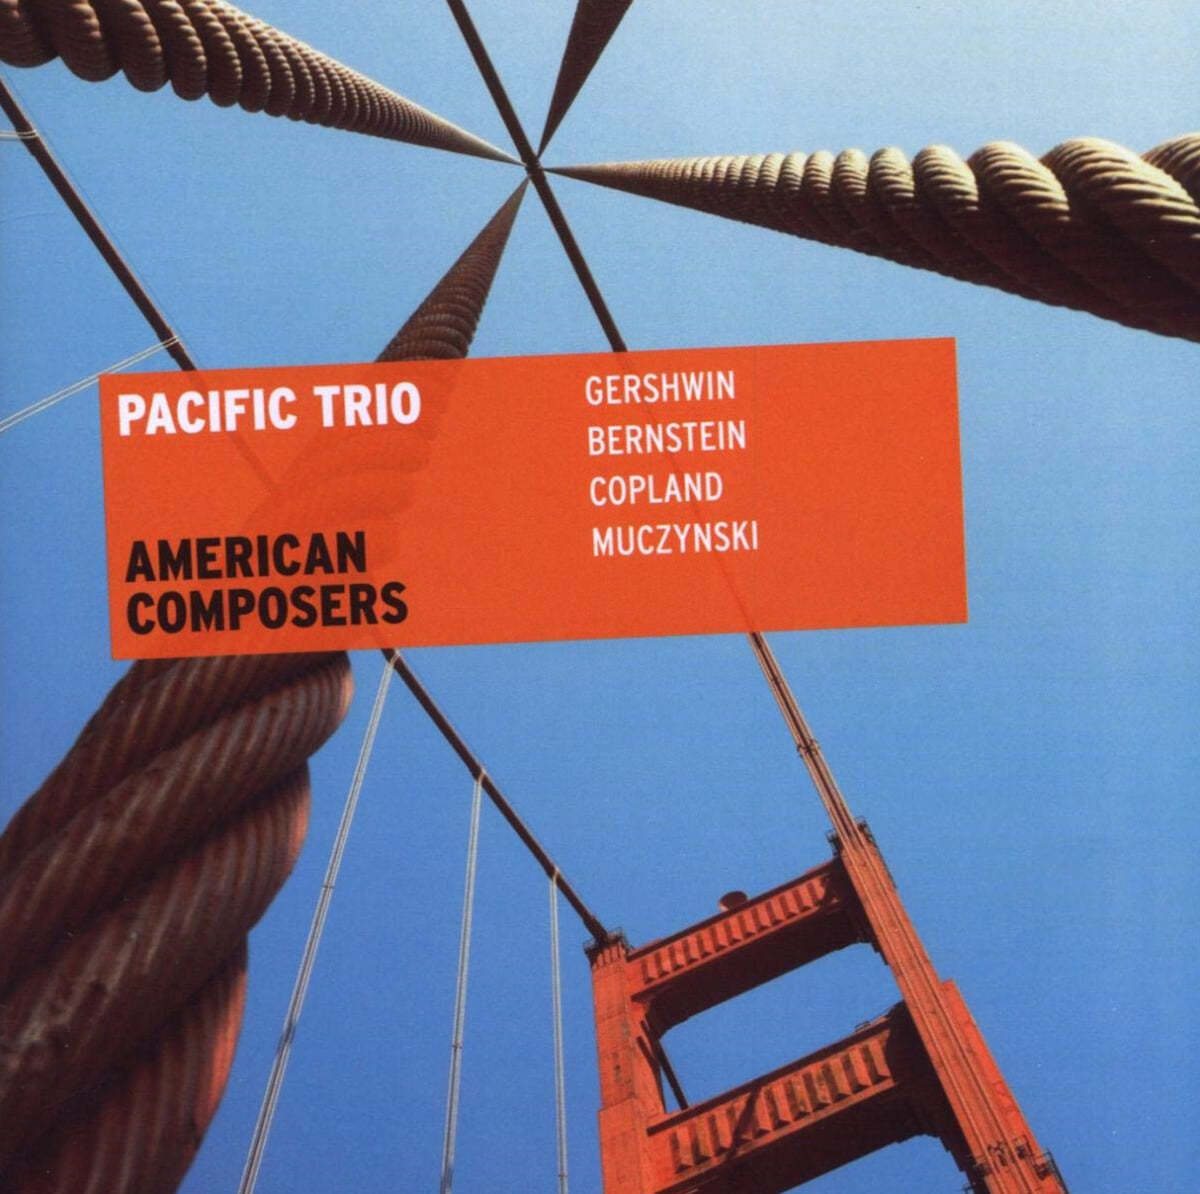 Pacific Trio 거쉰 / 번스타인 / 무진스키: 피아노 삼중주 (Gershwin / Bernstein / Muczynski: Piano Trios) 